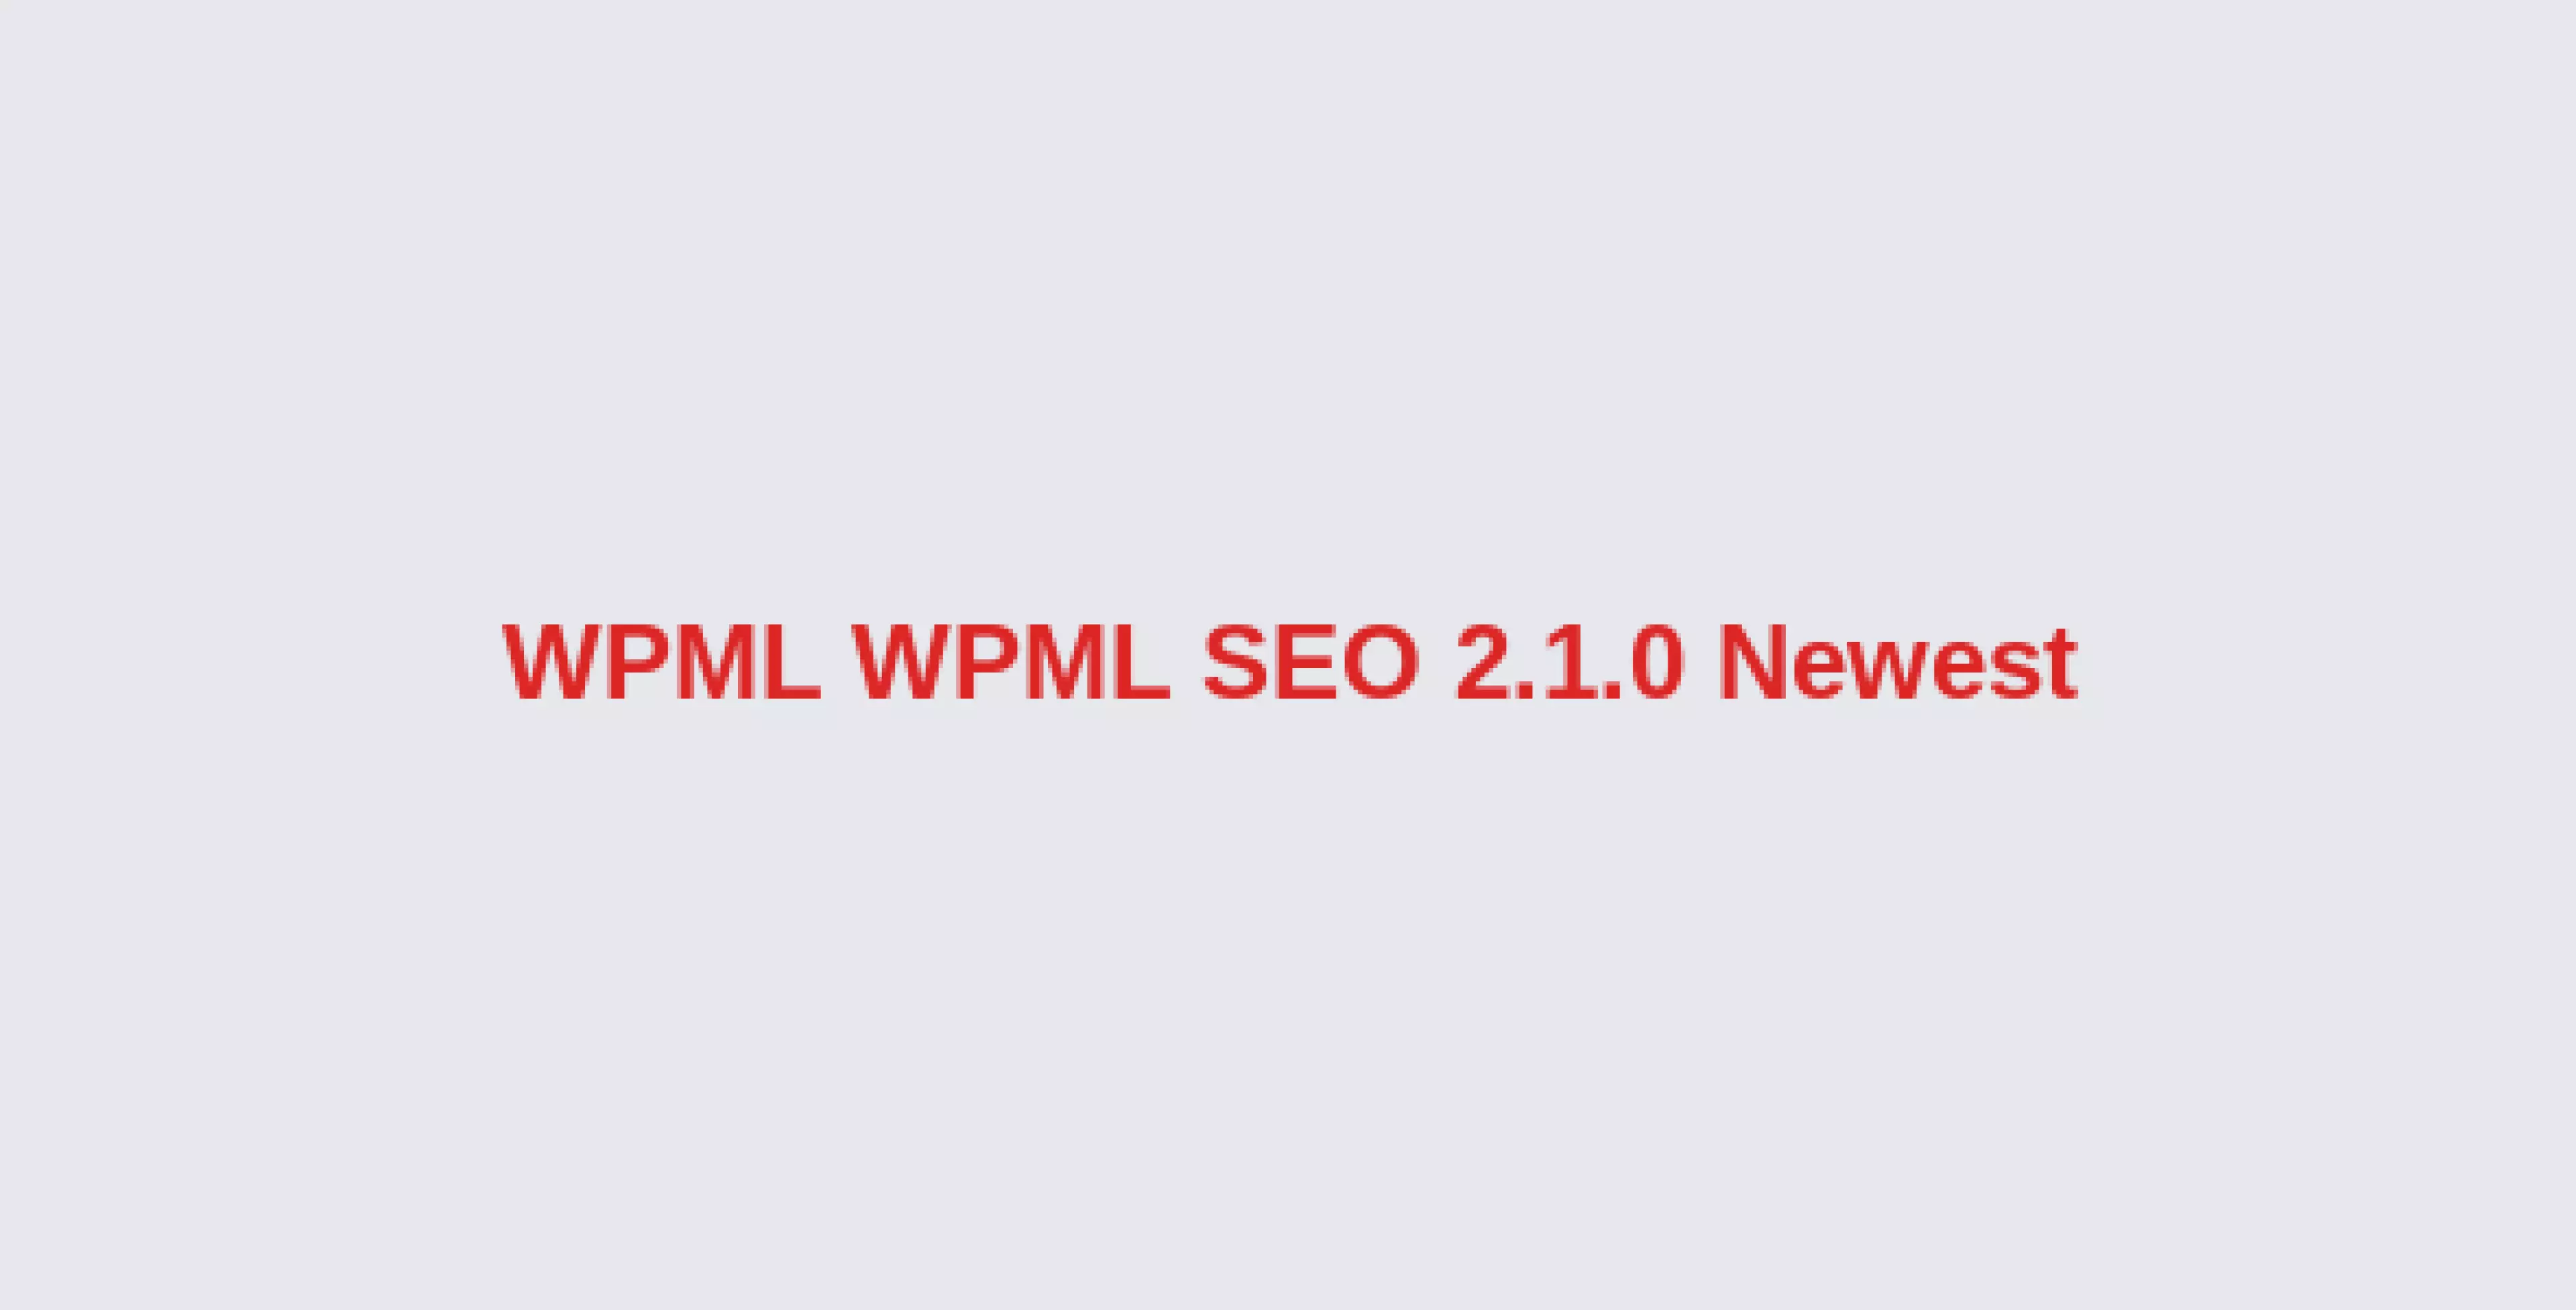 WPML WPML SEO 2.1.0